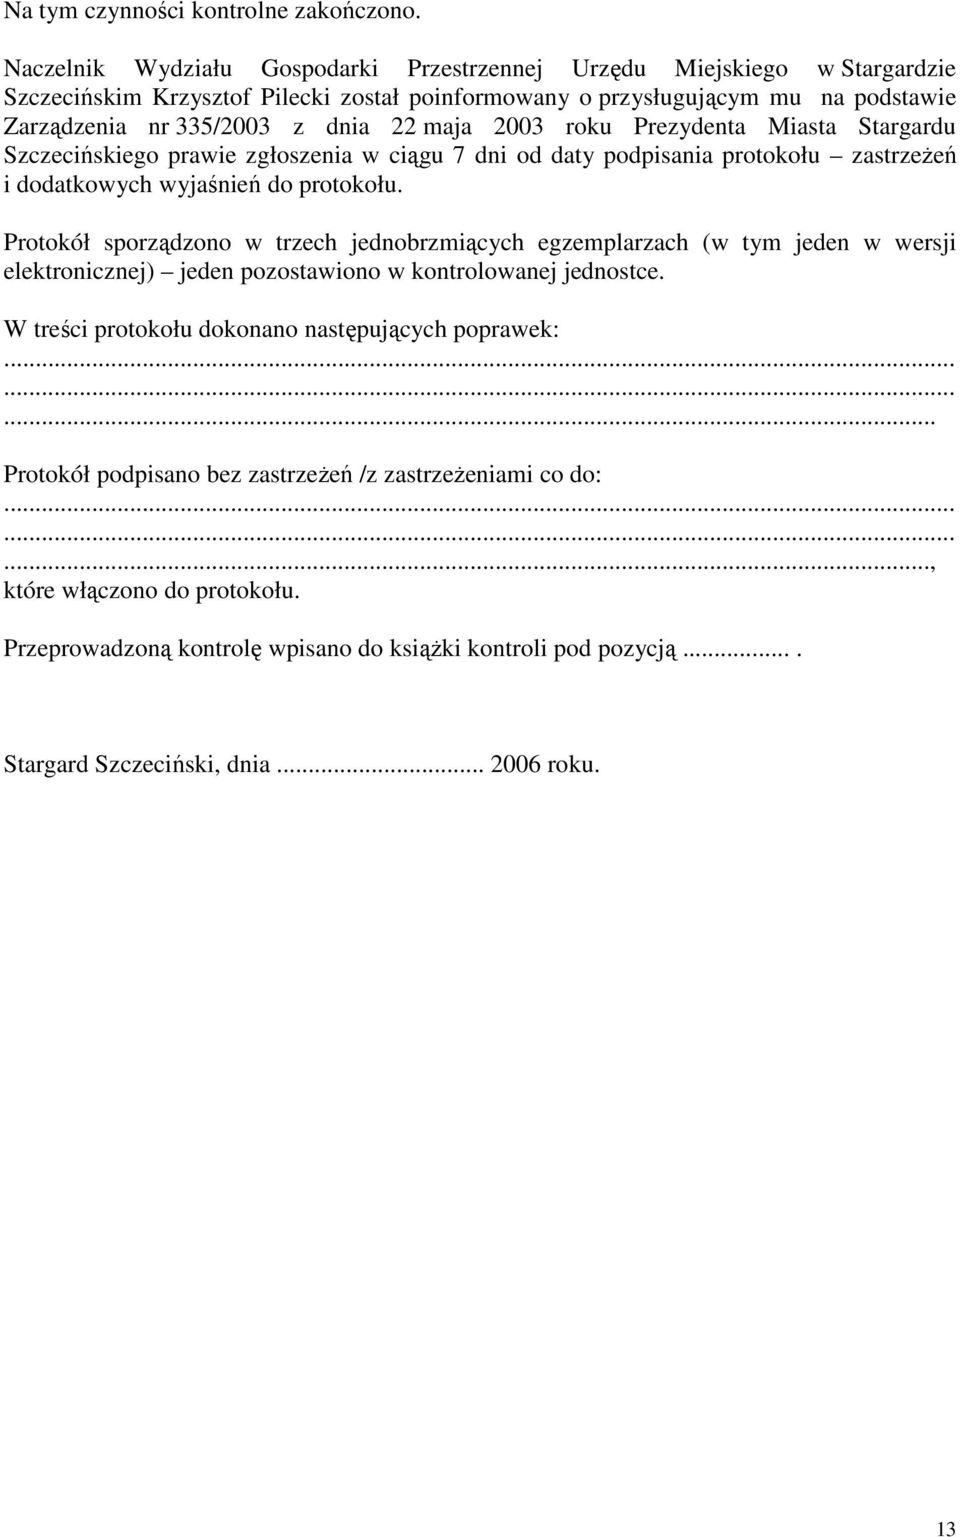 2003 roku Prezydenta Miasta Stargardu Szczecińskiego prawie zgłoszenia w ciągu 7 dni od daty podpisania protokołu zastrzeŝeń i dodatkowych wyjaśnień do protokołu.